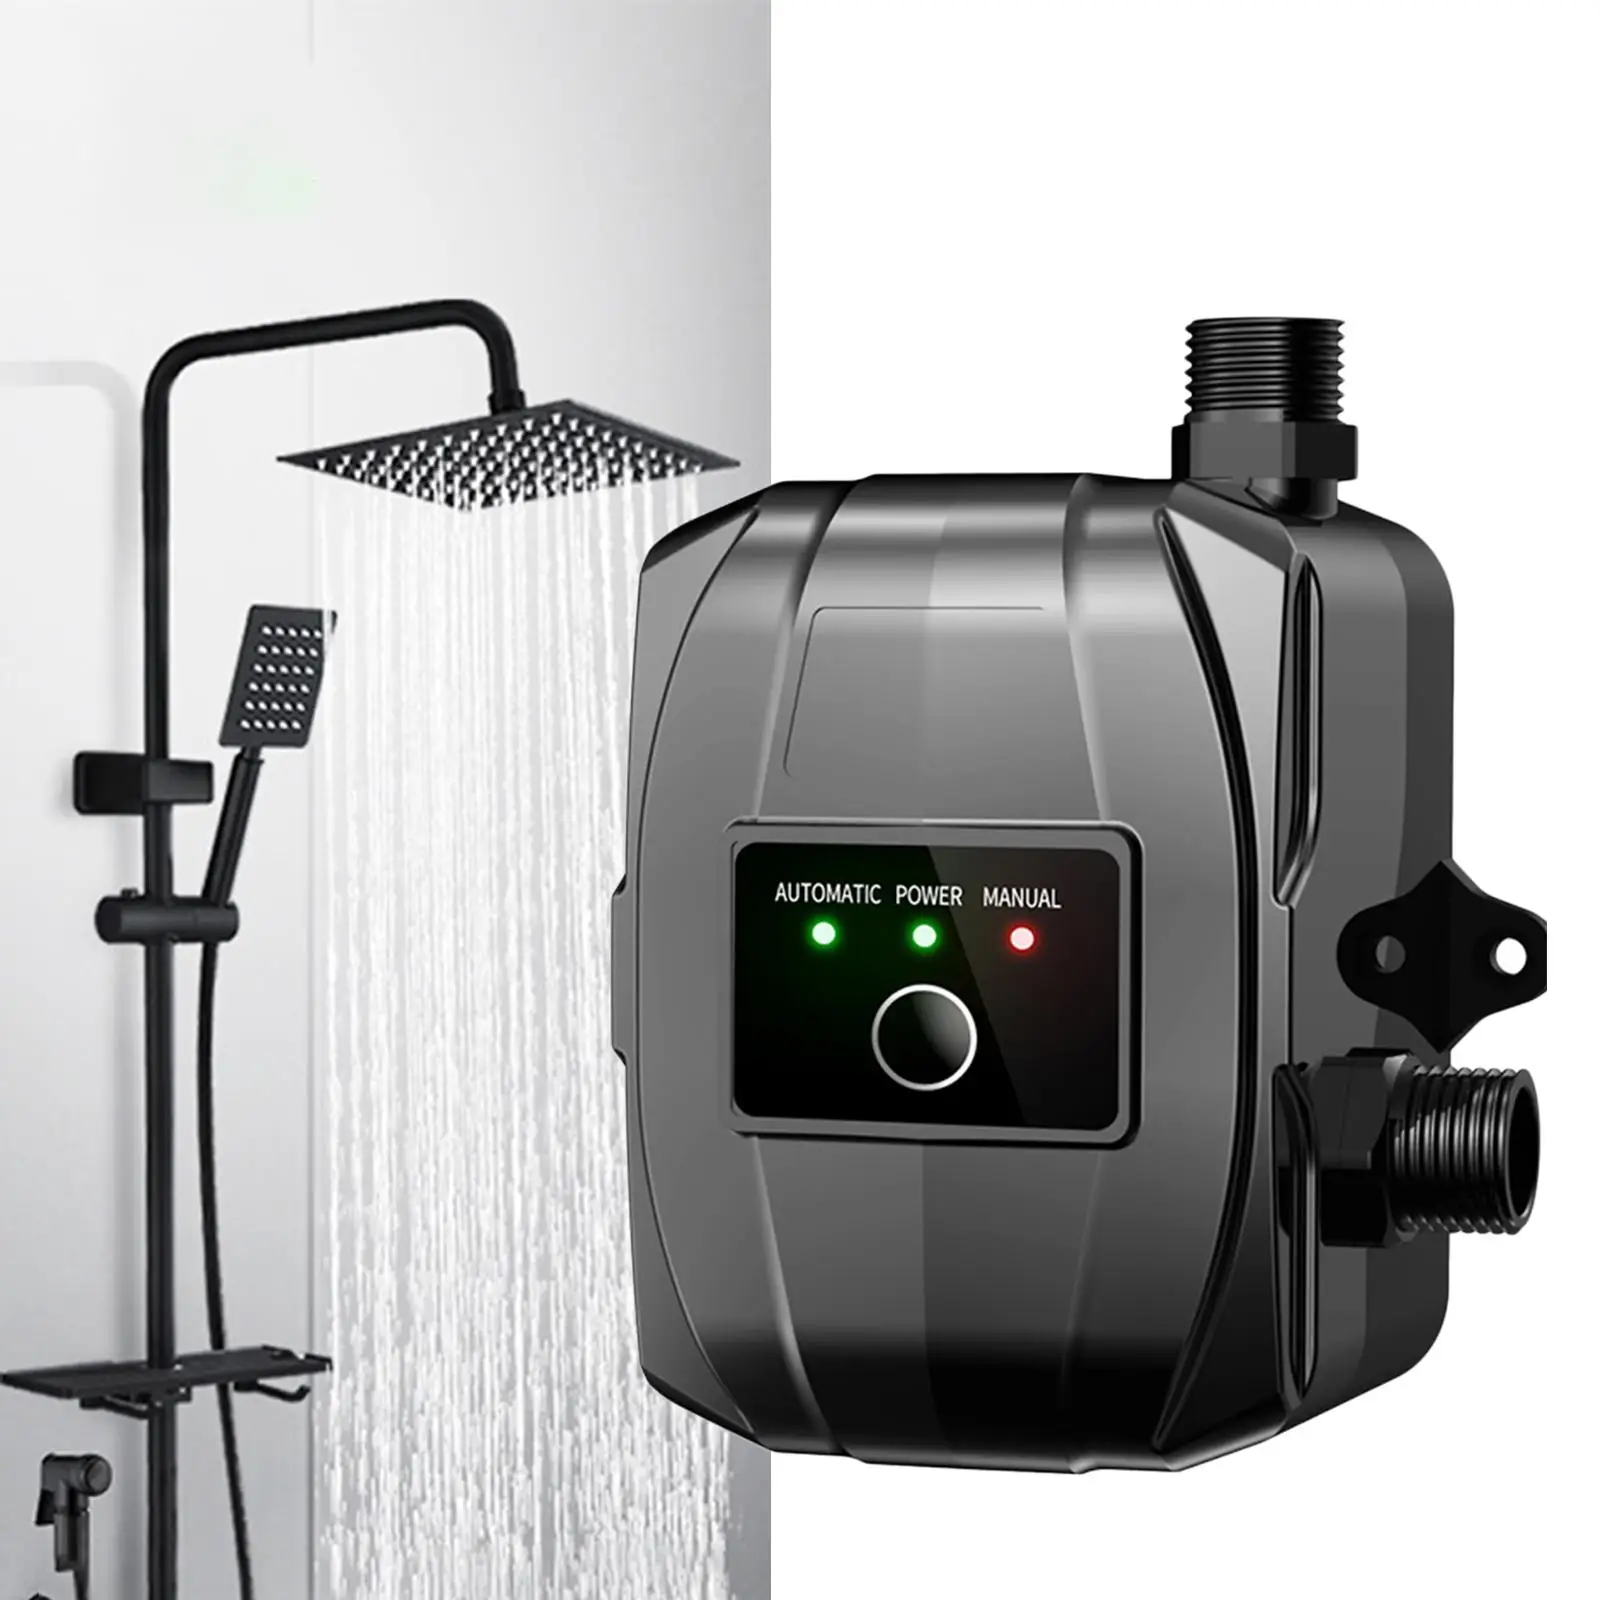 Water Pressure Booster Pump Silent Water Pump for Kitchen Sink Bathroom Home Shower